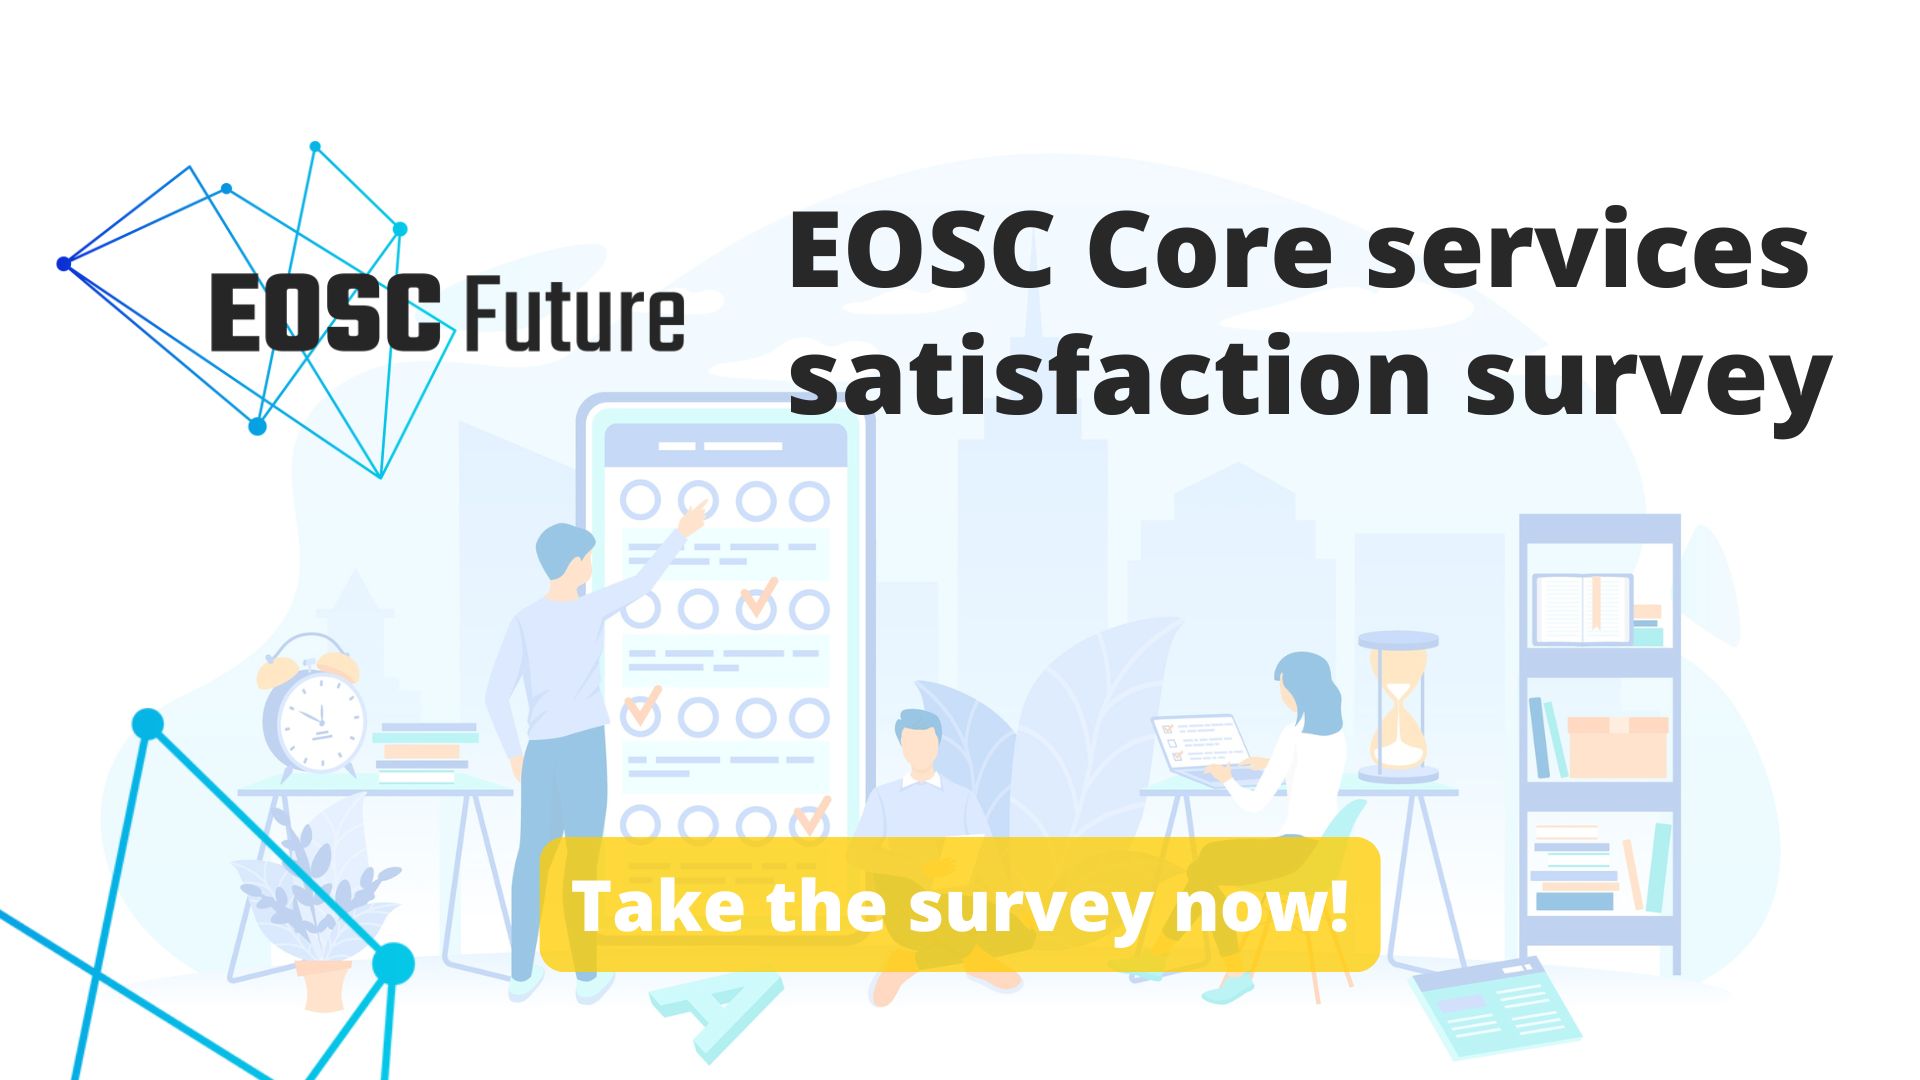 EOSC Core services satisfaction survey